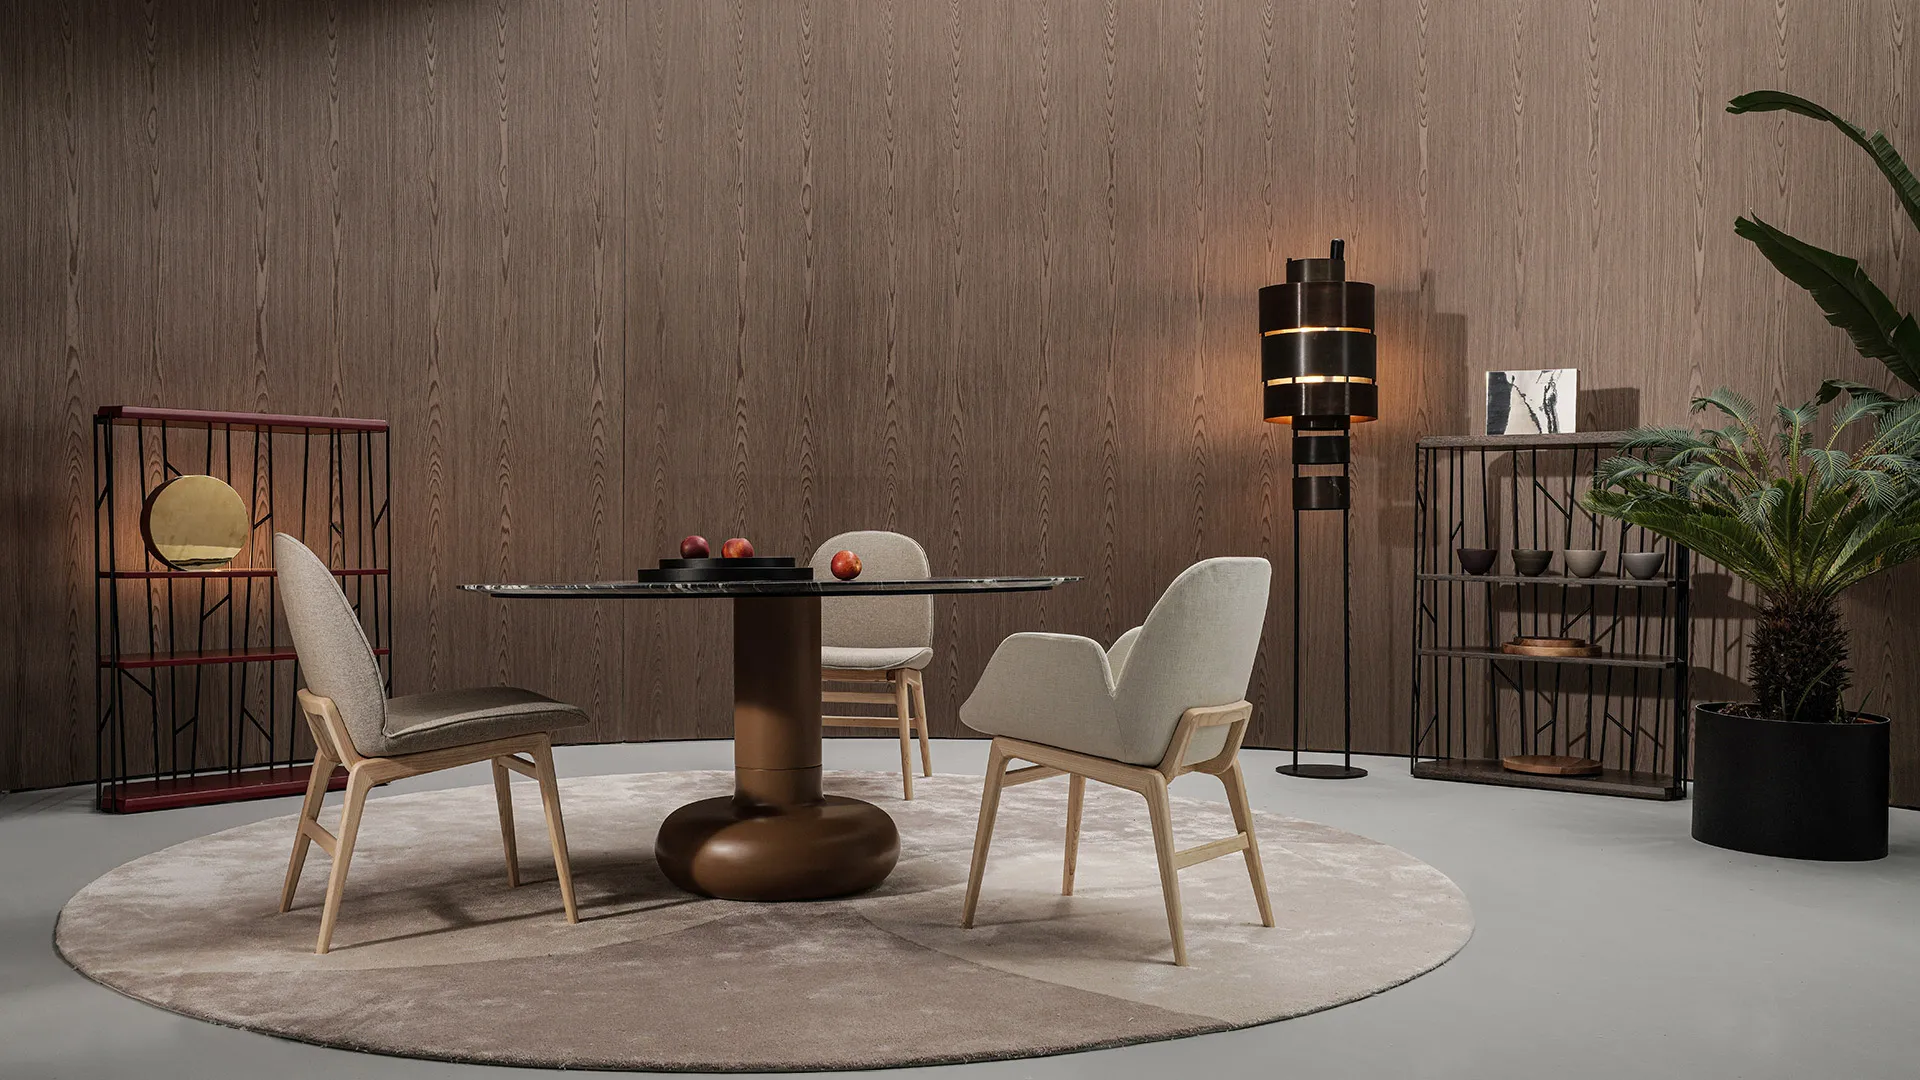 Tirreno, Casa International 'Allover 2021' collection designed by Mauro Lipparini